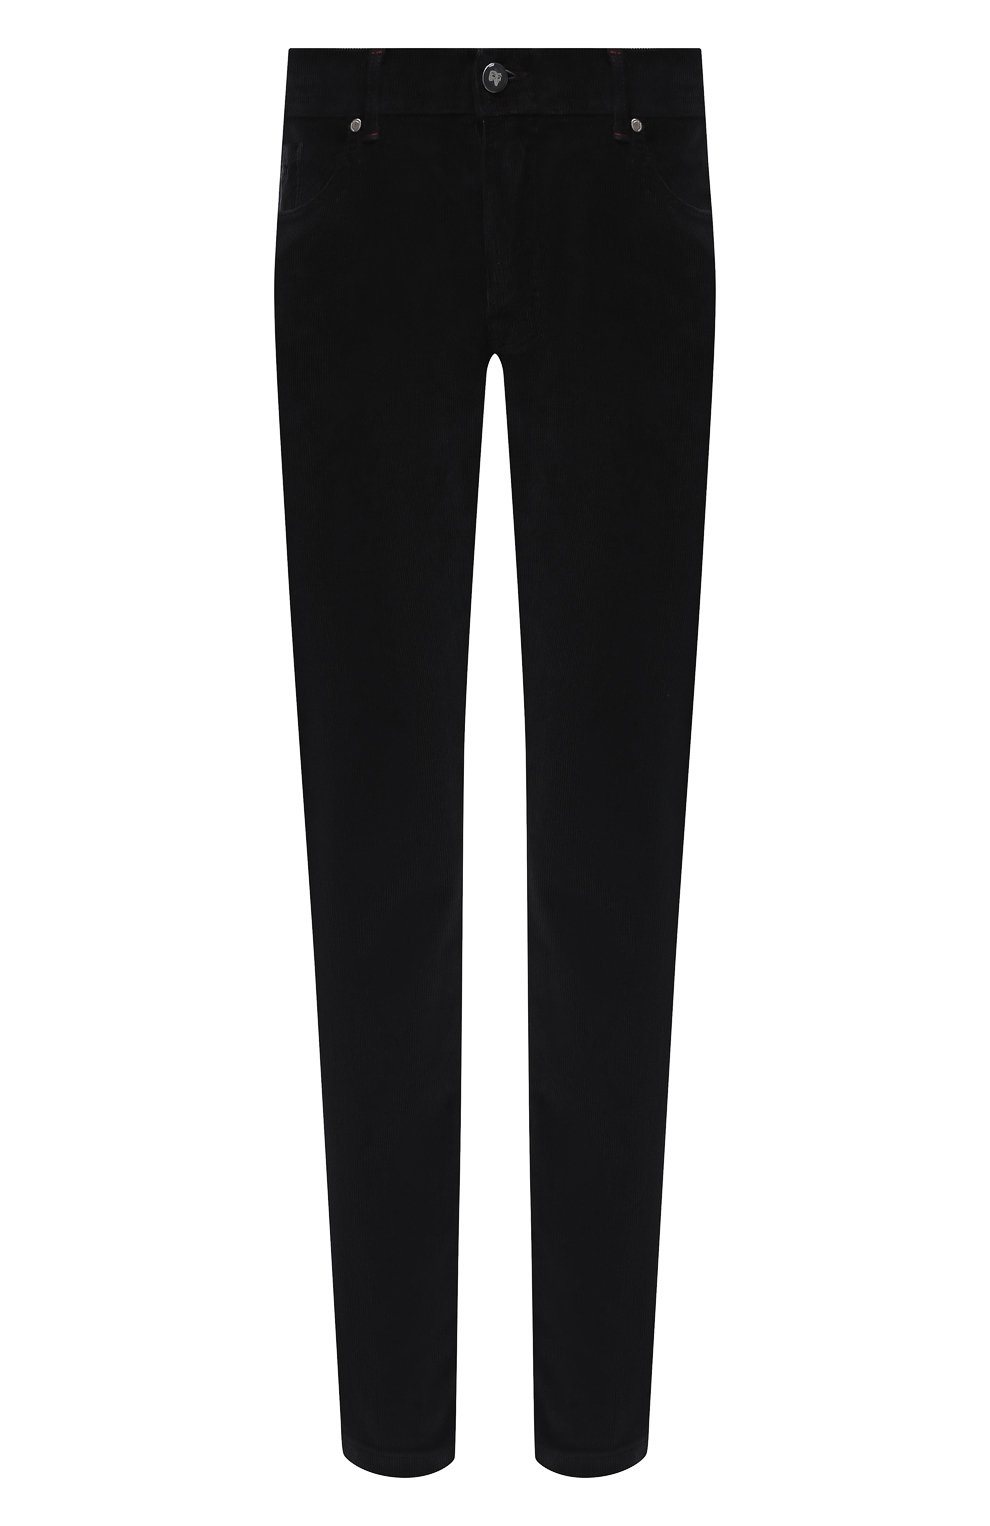 Мужские брюки из хлопка и кашемира MARCO PESCAROLO черного цвета, арт. NERAN0M18/4205 | Фото 1 (Длина (брюки, джинсы): Стандартные; Случай: Повседневный; Материал внешний: Хлопок; Стили: Кэжуэл)